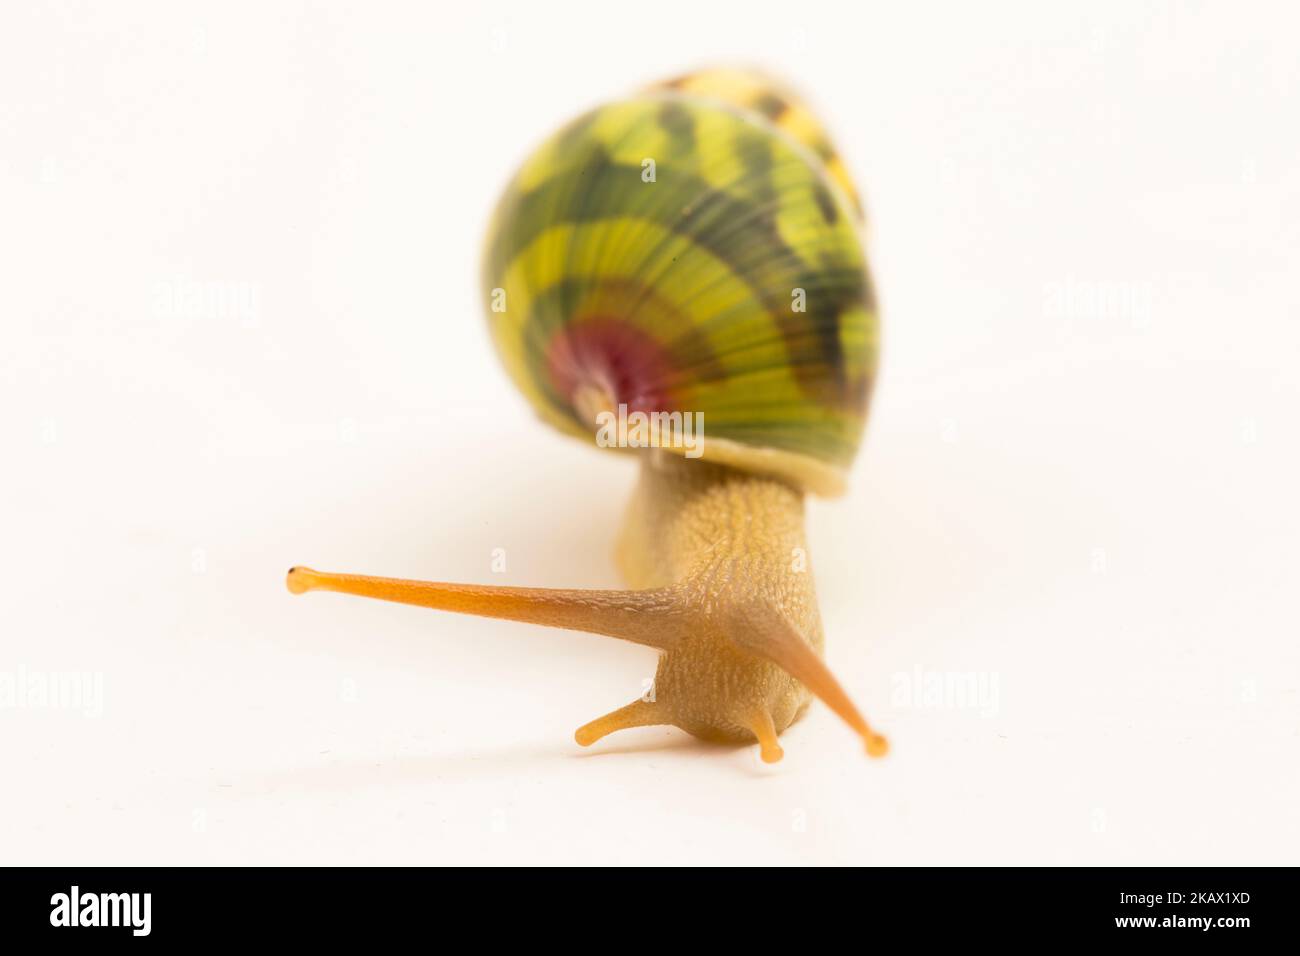 arboreal pulmonate land snail Amphidromus palaceus isolated on white background Stock Photo